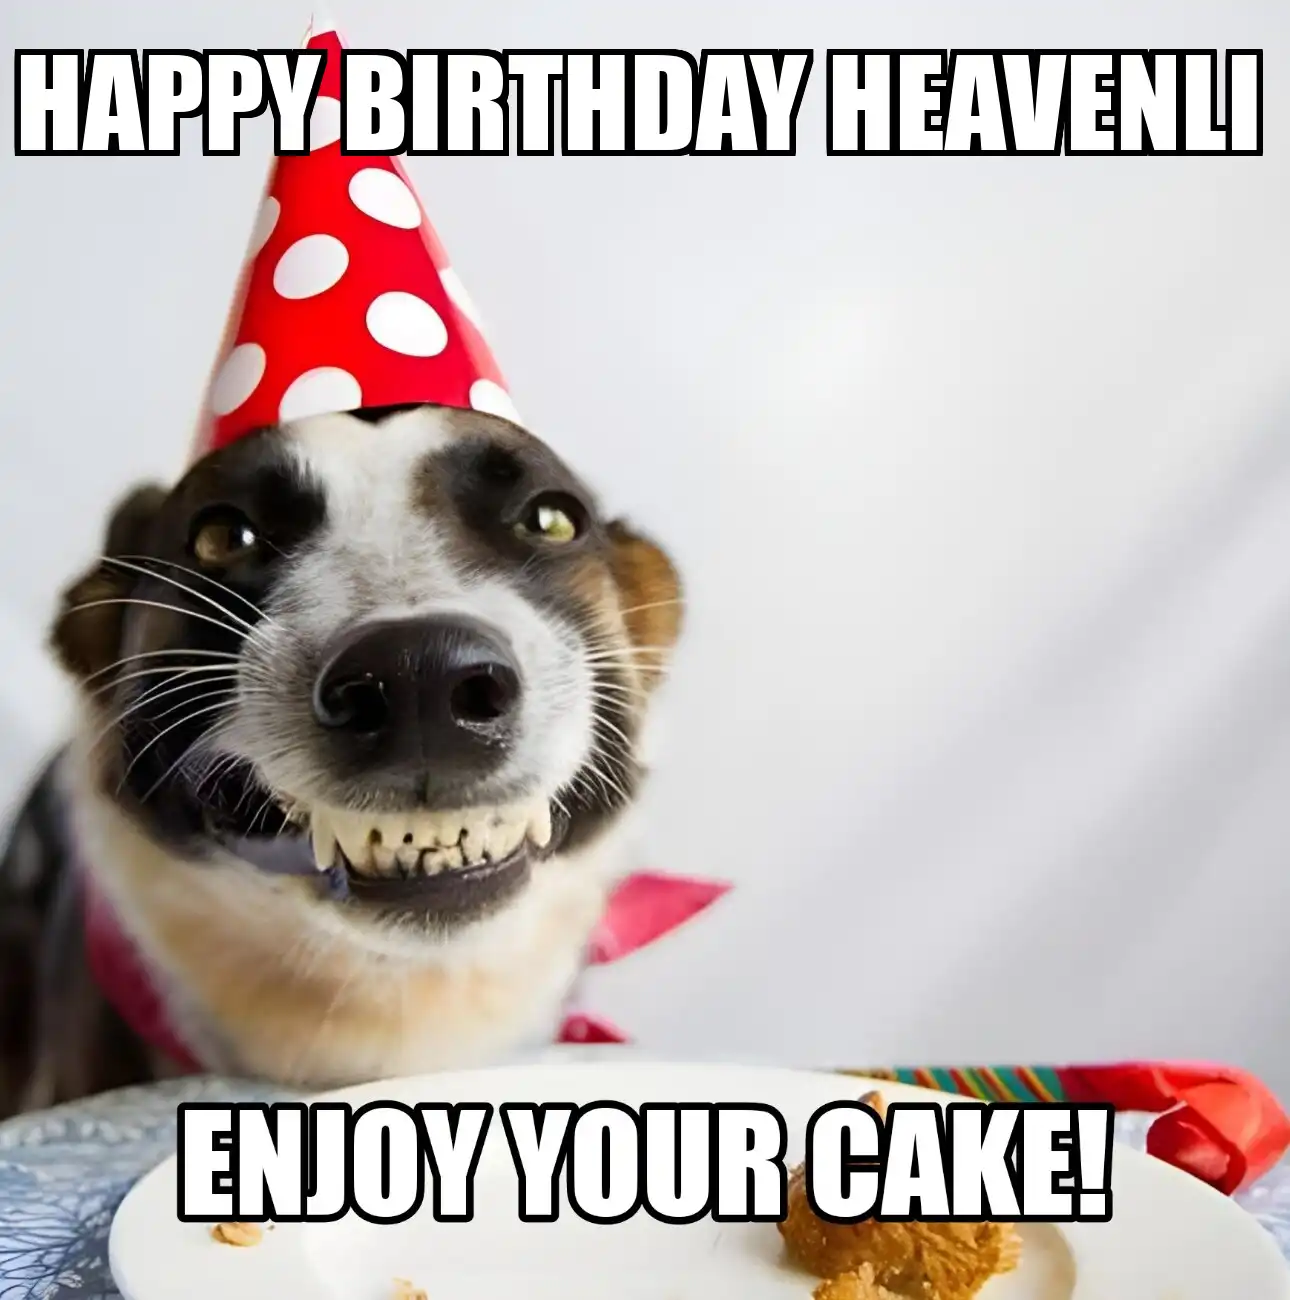 Happy Birthday Heavenli Enjoy Your Cake Dog Meme